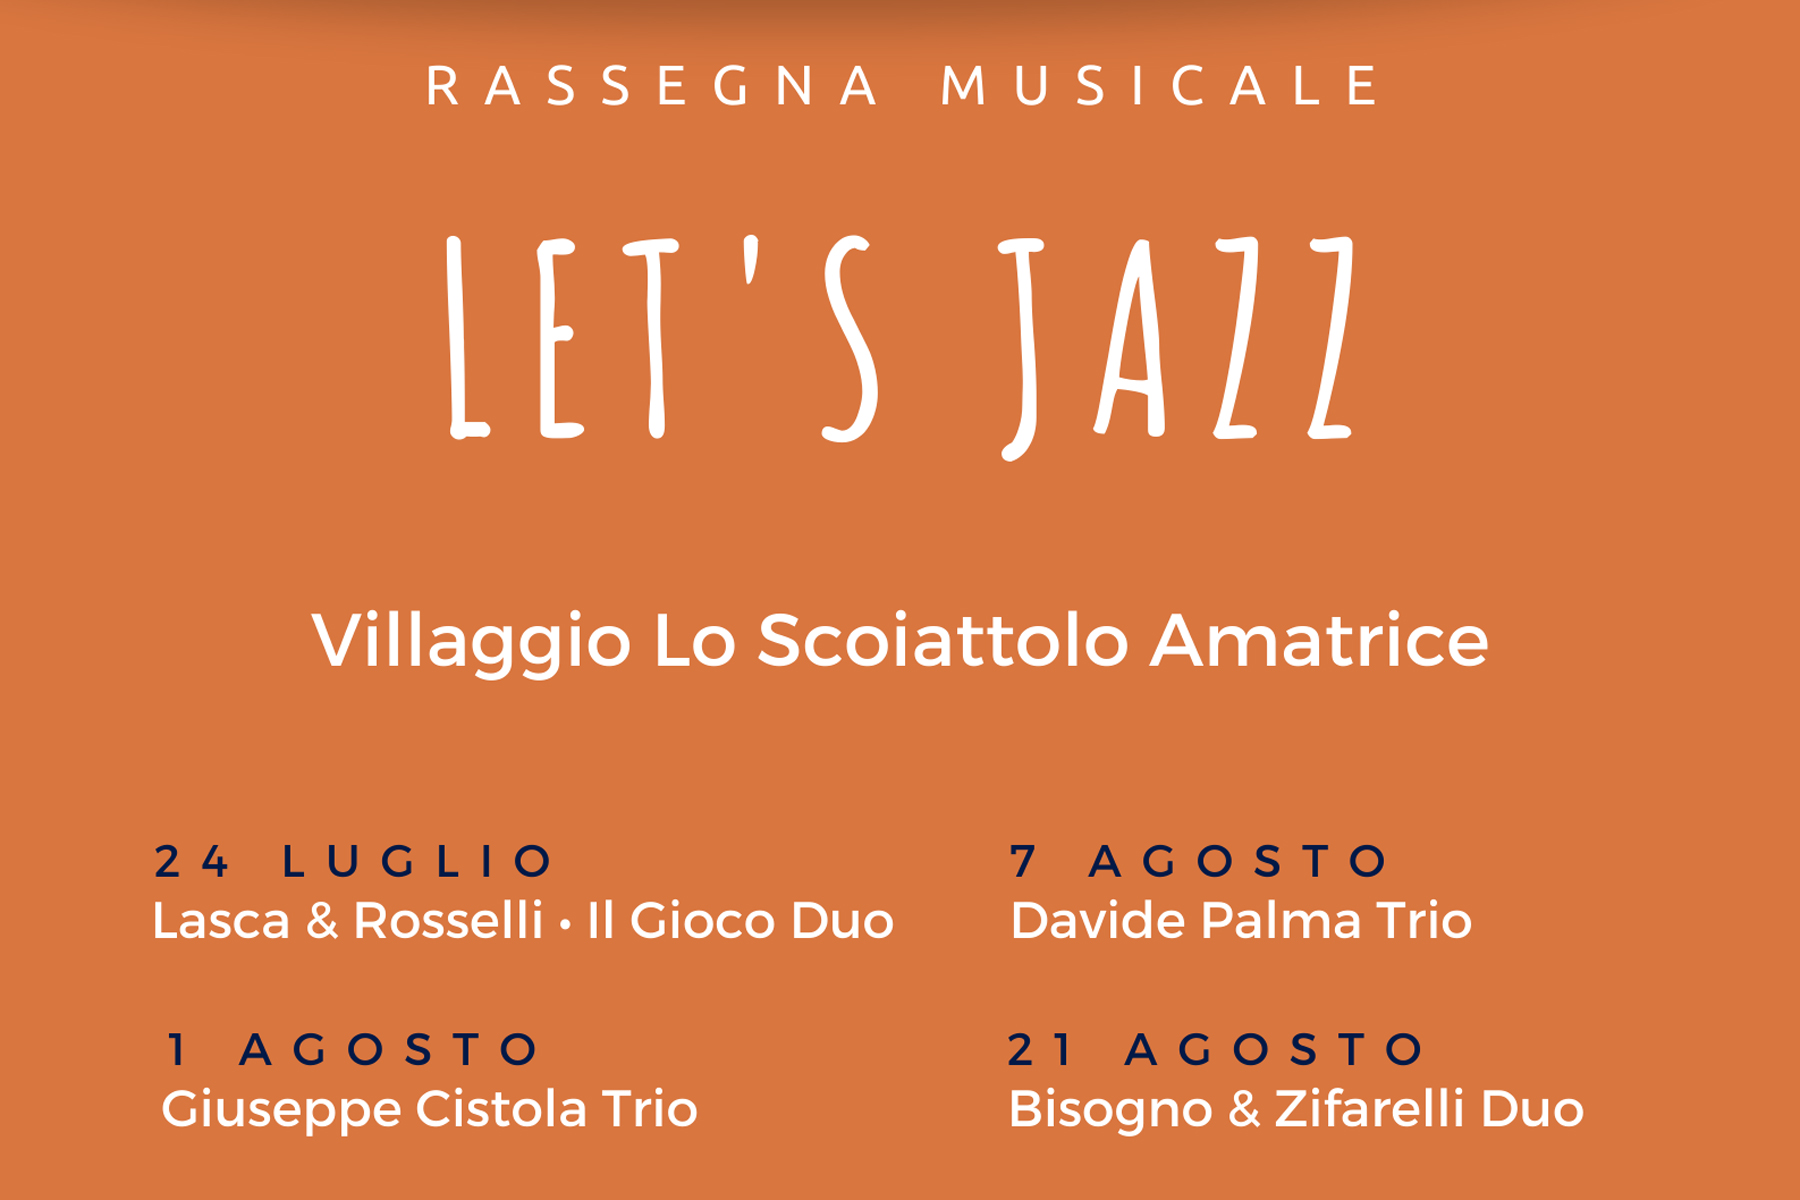 Let’s Jazz / Giuseppe Cistola Trio